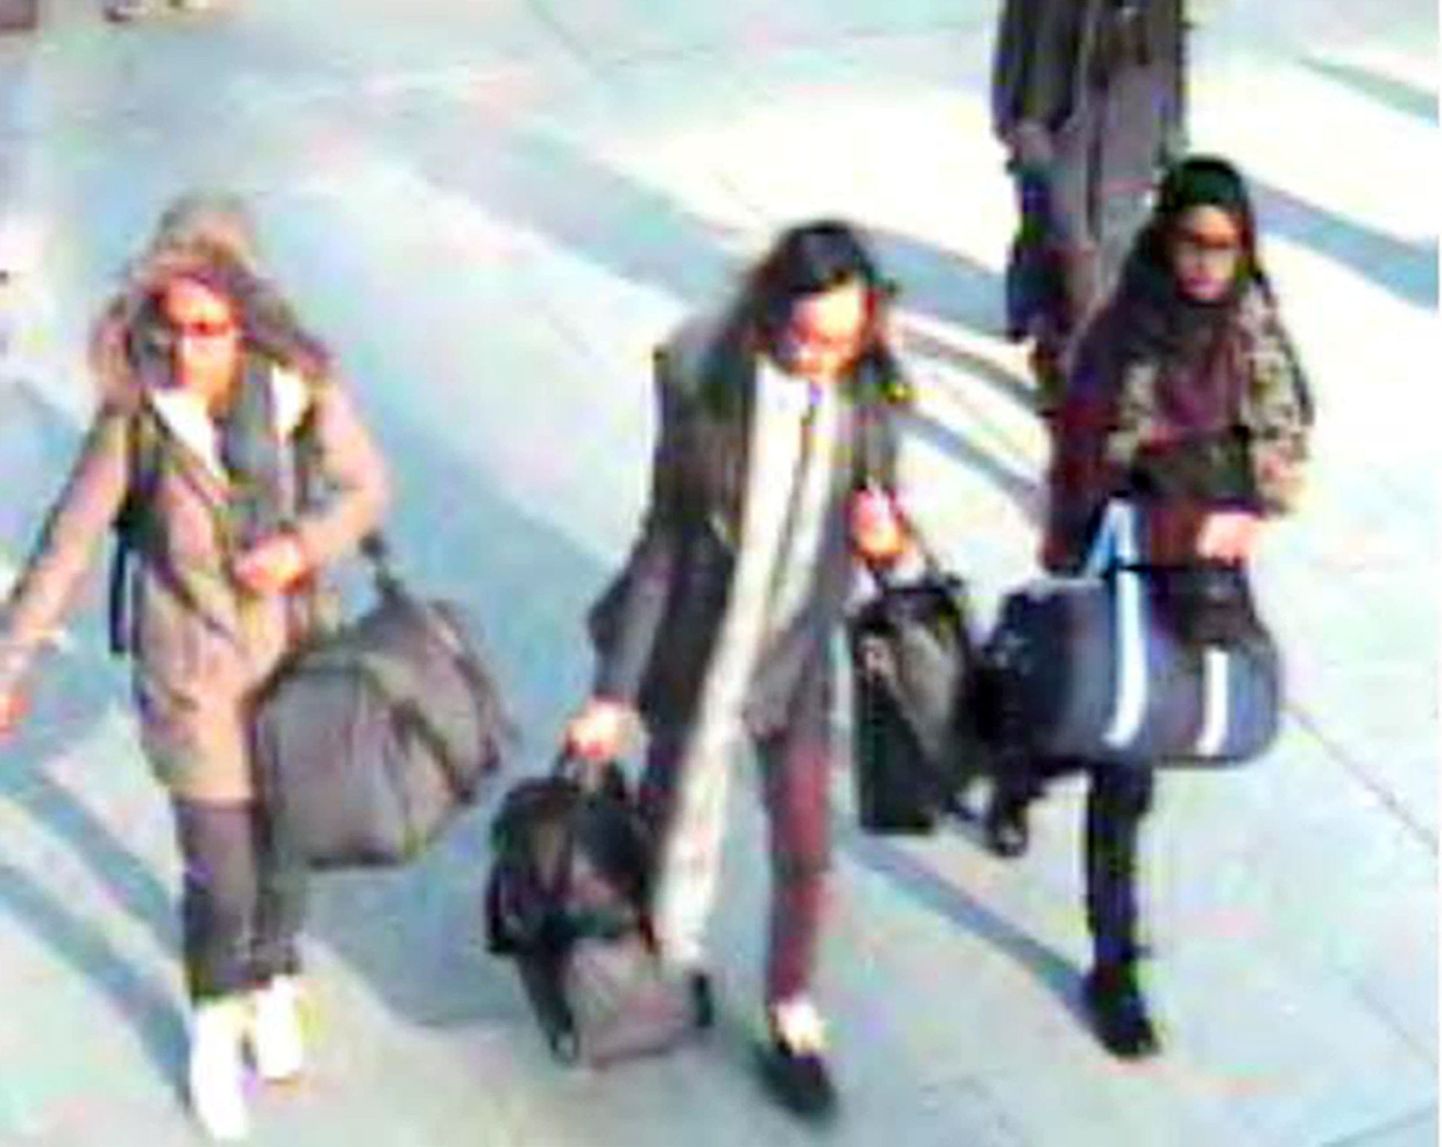 Ühendkuningriigist Islamiriigi võitlejate juurde põgenenud 15-aastane Amira Abase (vasakul), 16-aastane Kadiza Sultana ja 15-aastane Shamima Begum